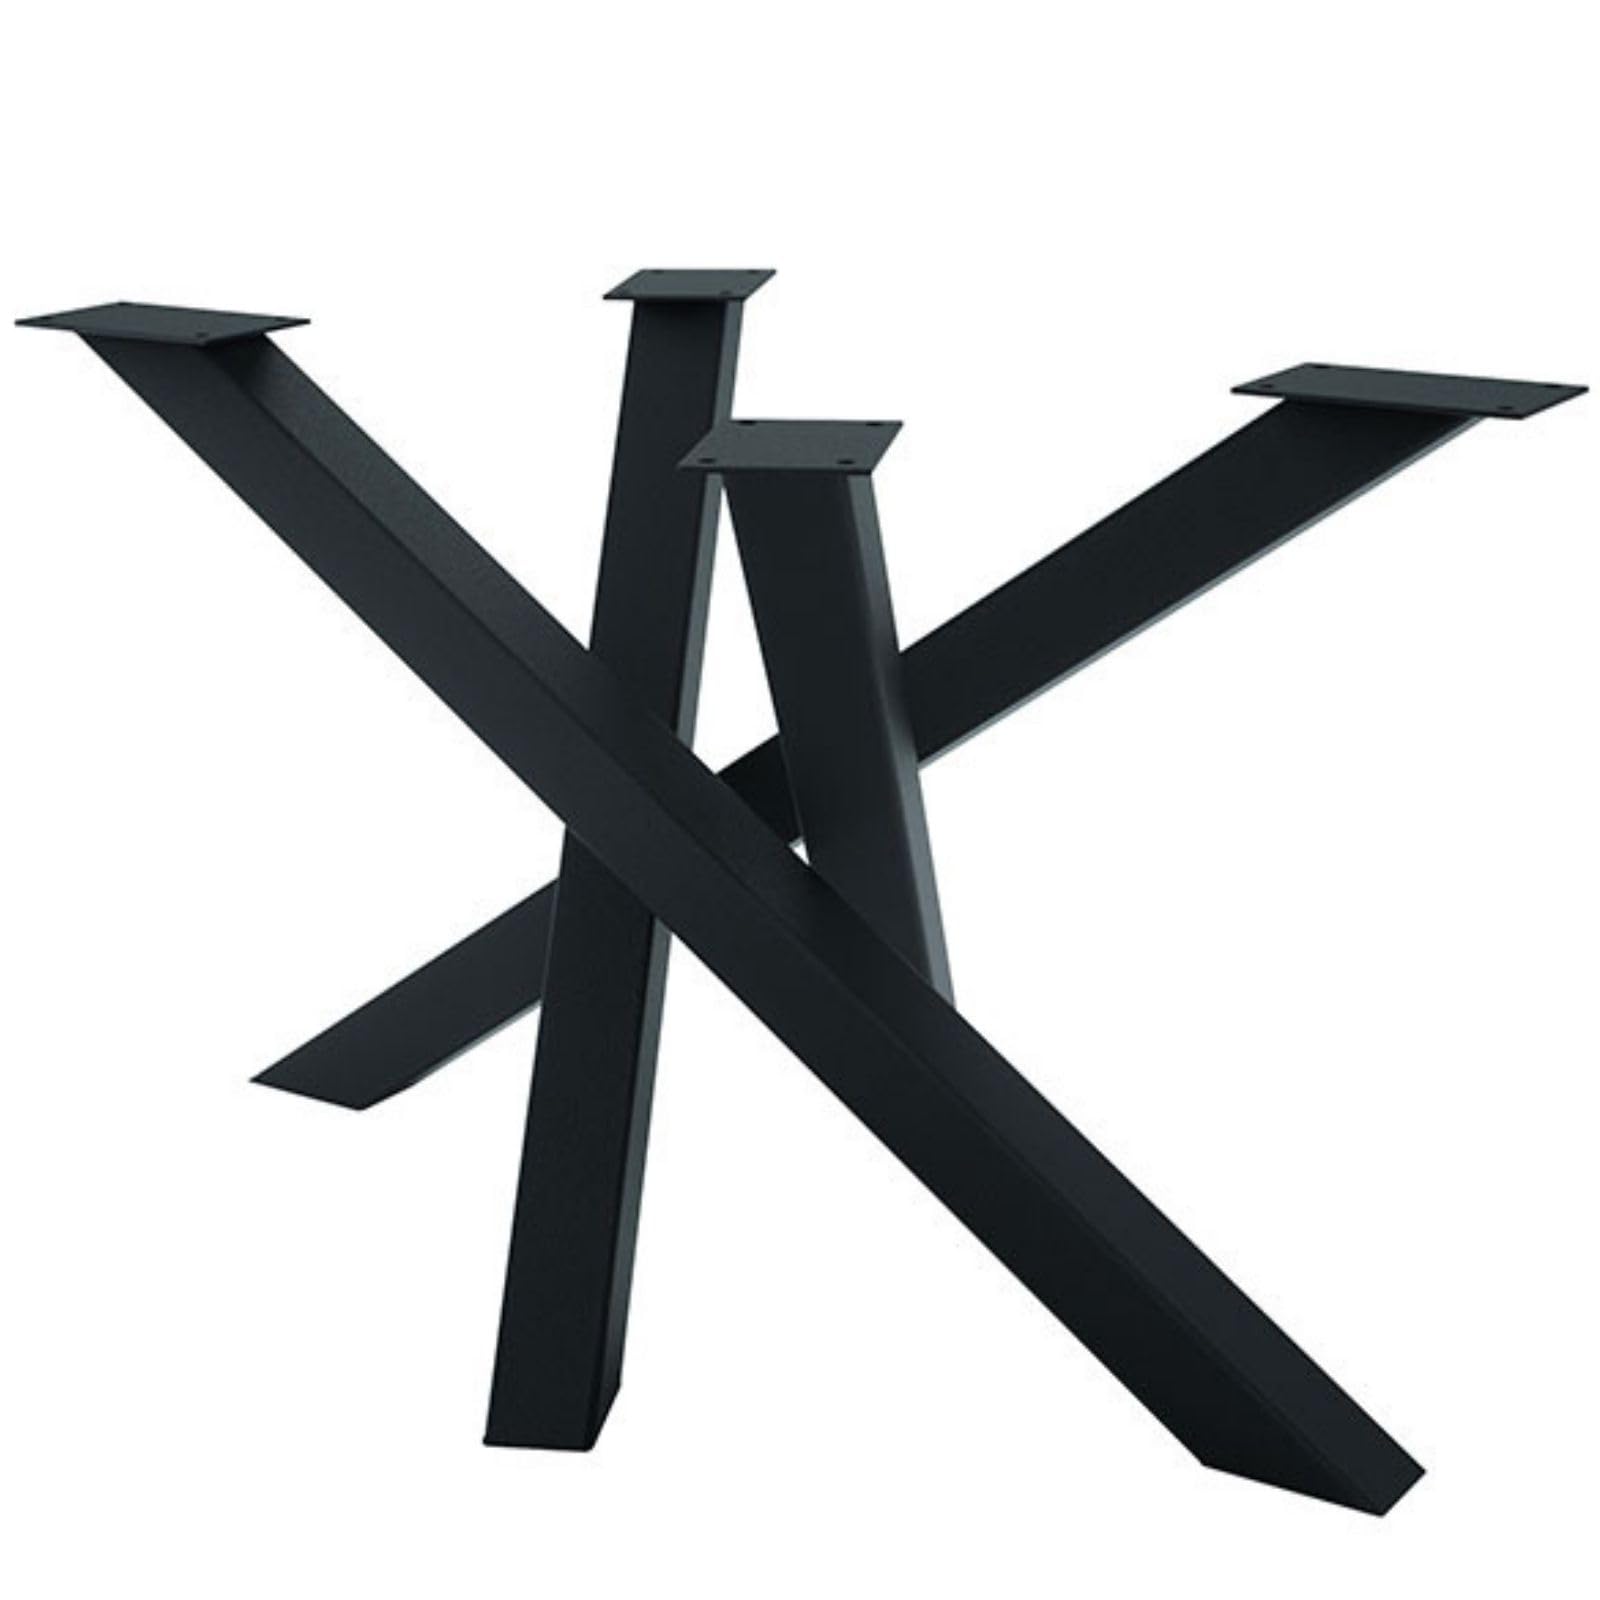 CM Furniture - 1x Tischgestell Spider | Tischbeine Metall Schwarz - H72x B76 x L120 cm | Massive Tischfüsse aus Stahl für Wohzimmertisch, Konferenztisch, Esstisch einfache Montage - Made in EU